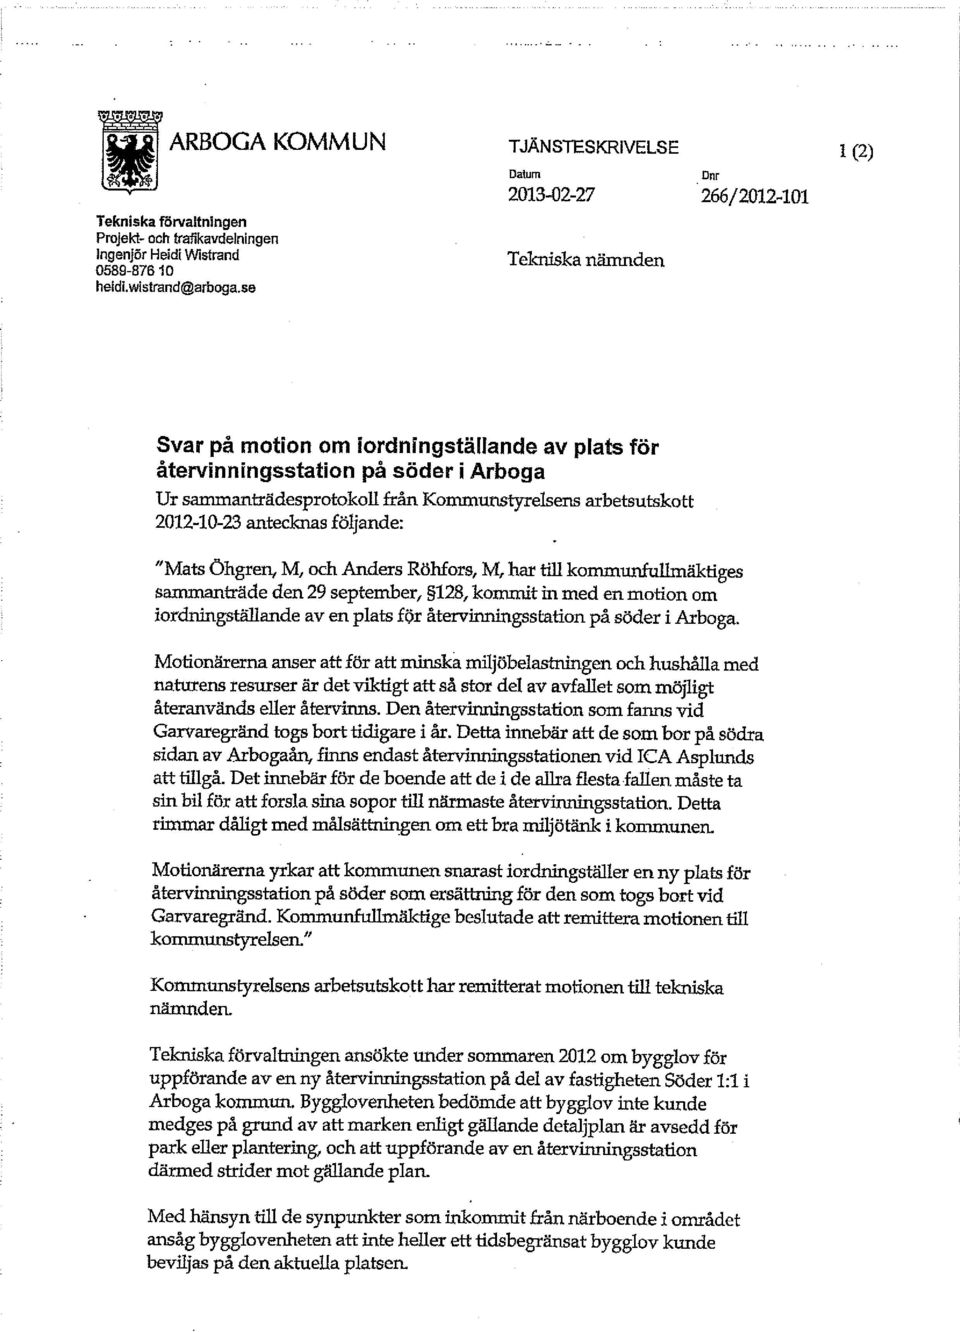 Kommunstyrelsens arbetsutskott 2012-10-23 antecknas följande: "Mats Öhgren, M, och Anders Röhfors, M, har till kommunfullmäktiges sammanträde den 29 september, 128, kommit in med en motion om